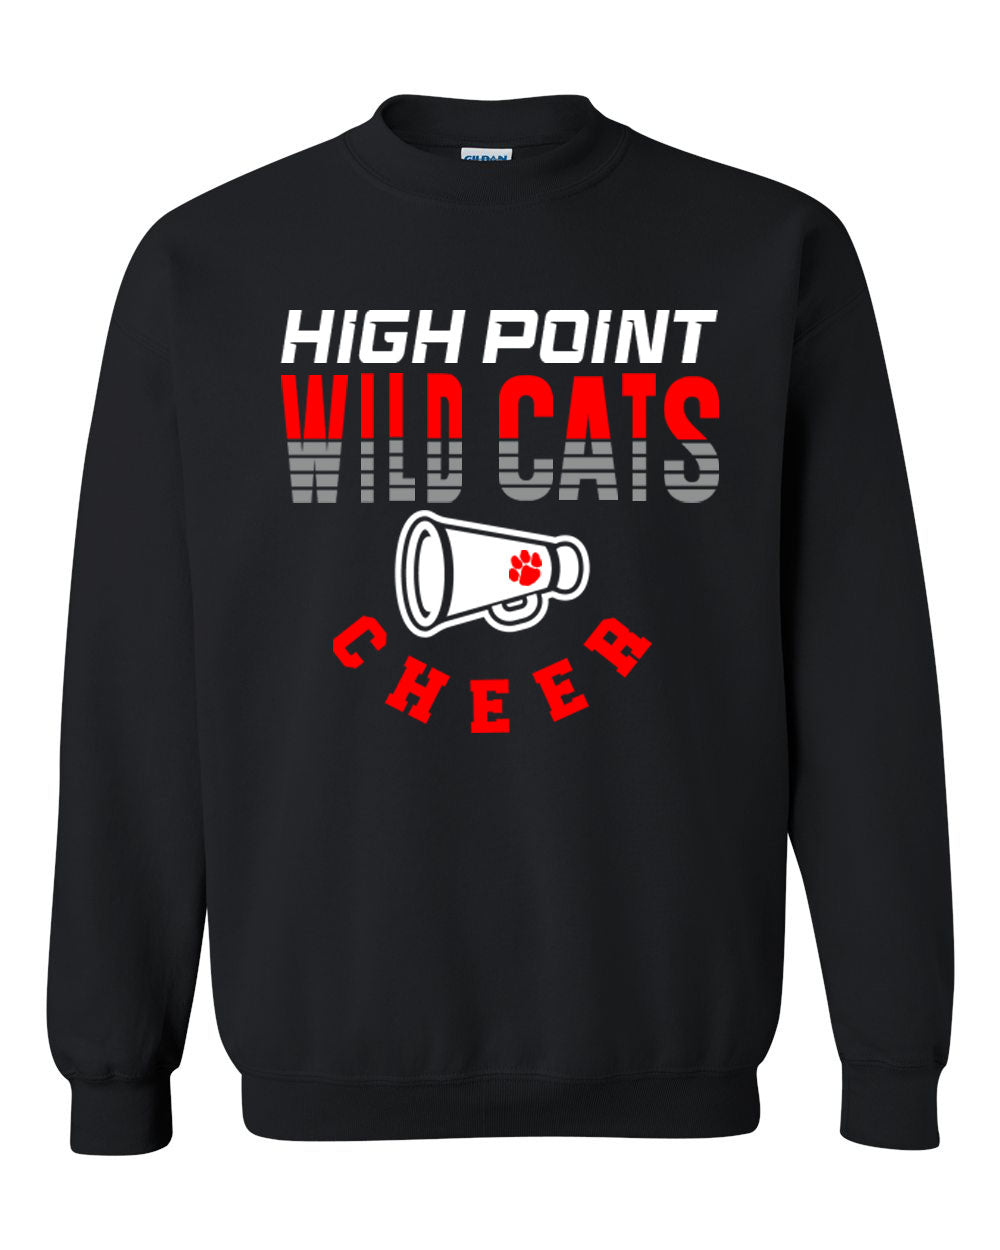 Wildcats Cheer Design 2 non hooded sweatshirt